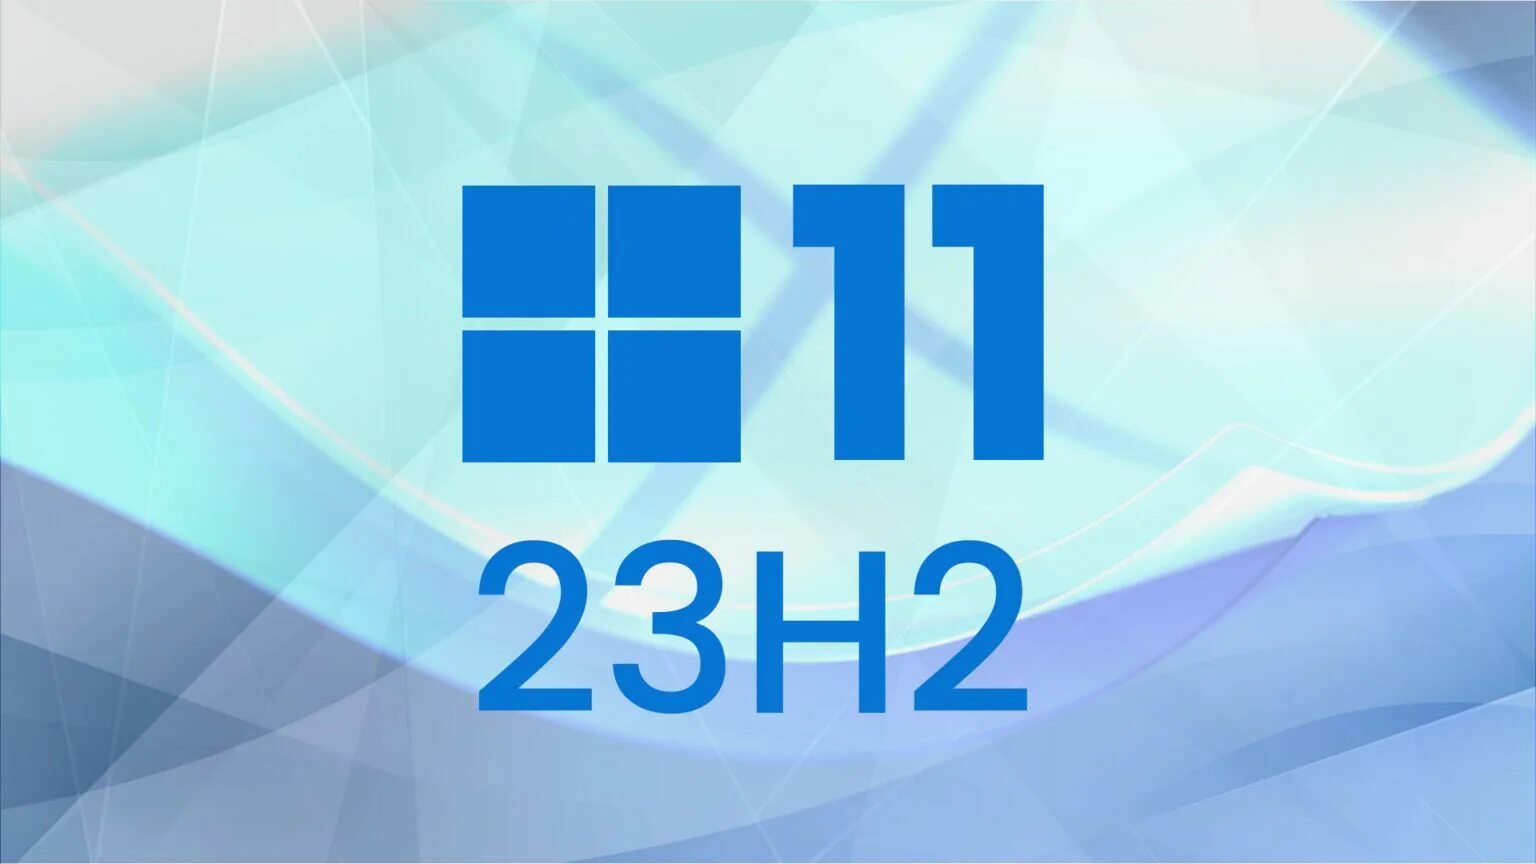 Windows 11 23h2 compact. Виндовс 11 23h2. Windows 11, Version 23h2. Windows 11 корпоративная. Windows 11 Pro 23h2 и 22h2.